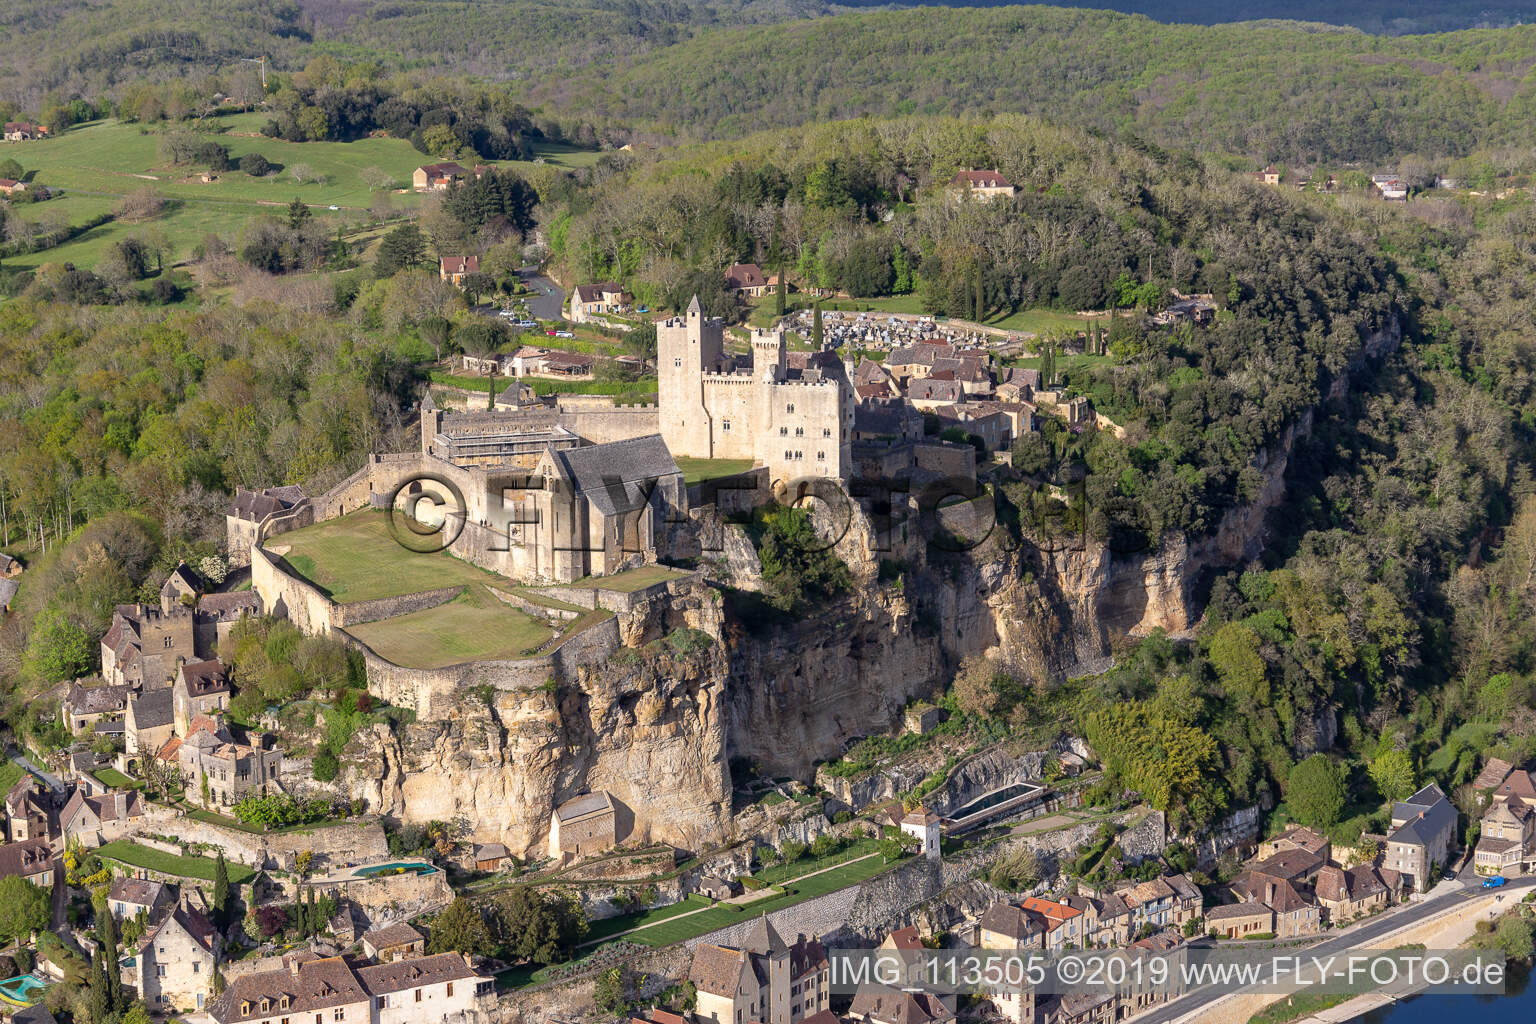 Château de Beynac à Beynac-et-Cazenac dans le département Dordogne, France vue d'en haut